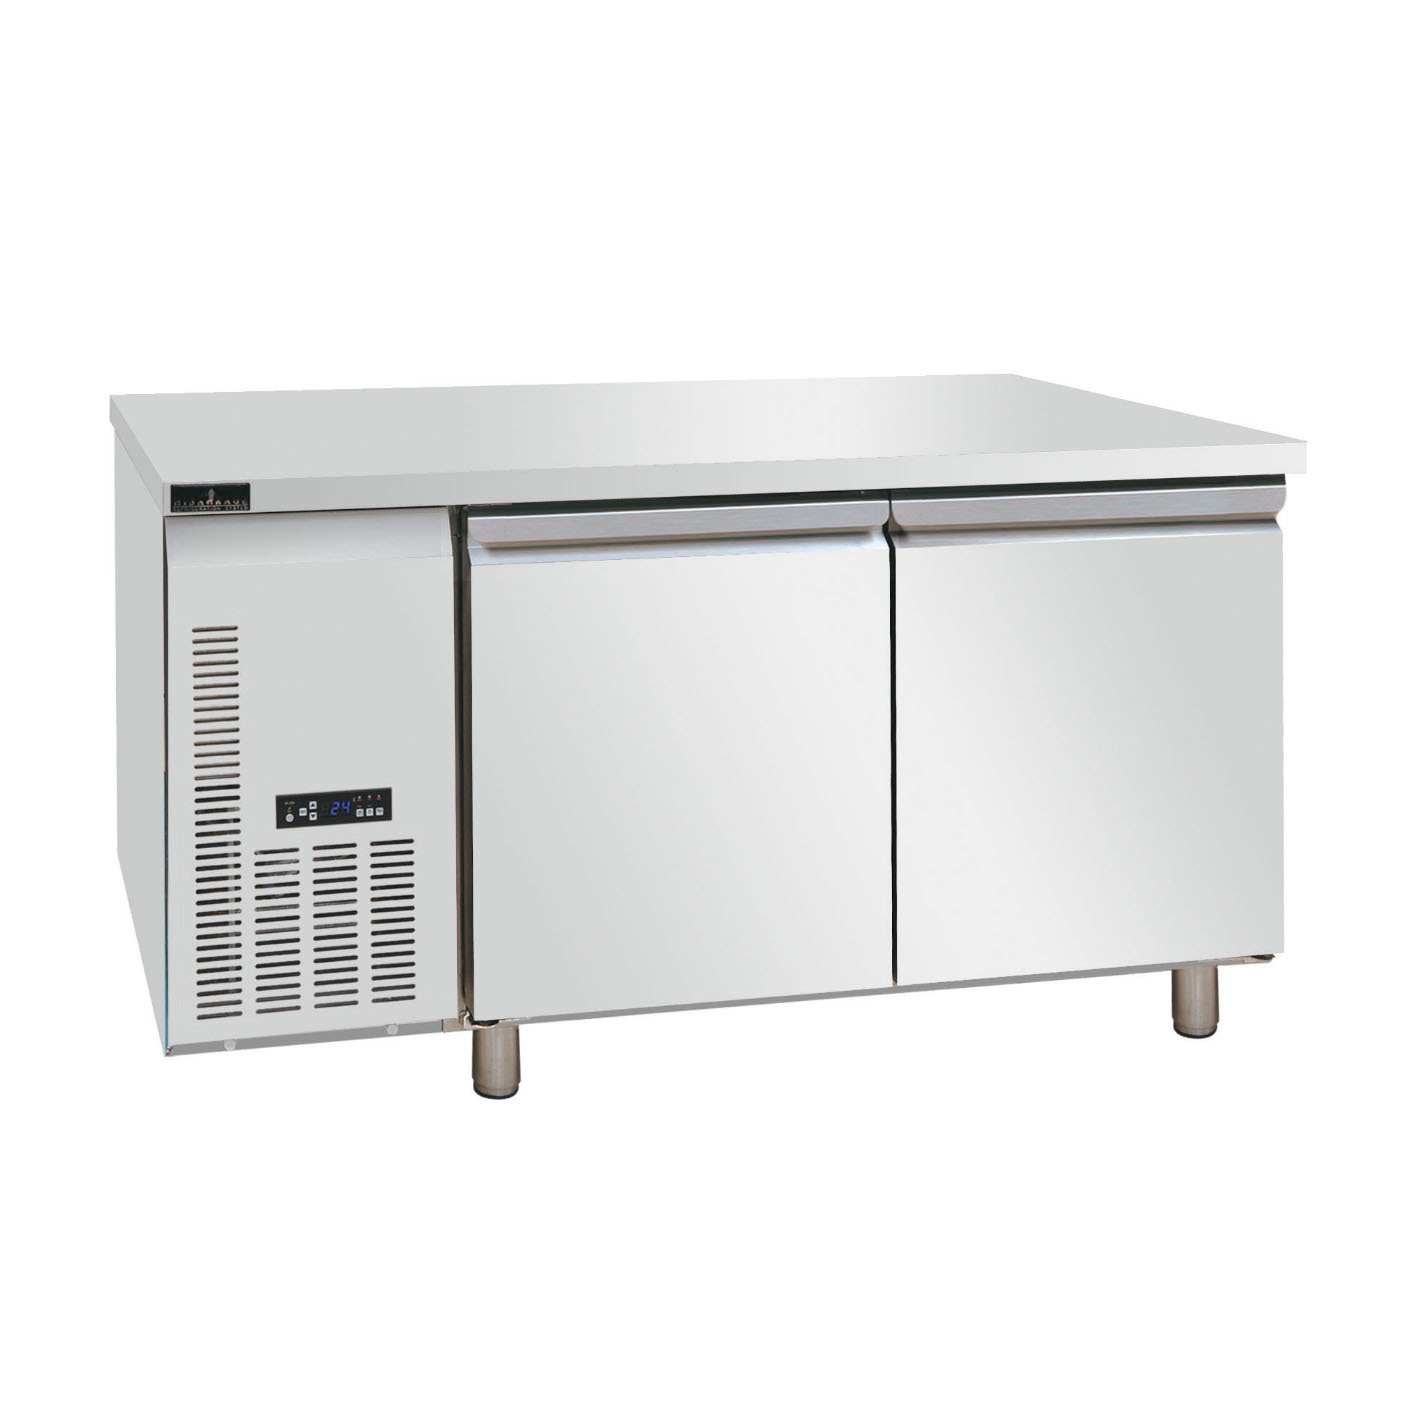 久景工作台冷柜商用平台风冷冷藏冷冻保鲜操作台冰箱商厨设备全套